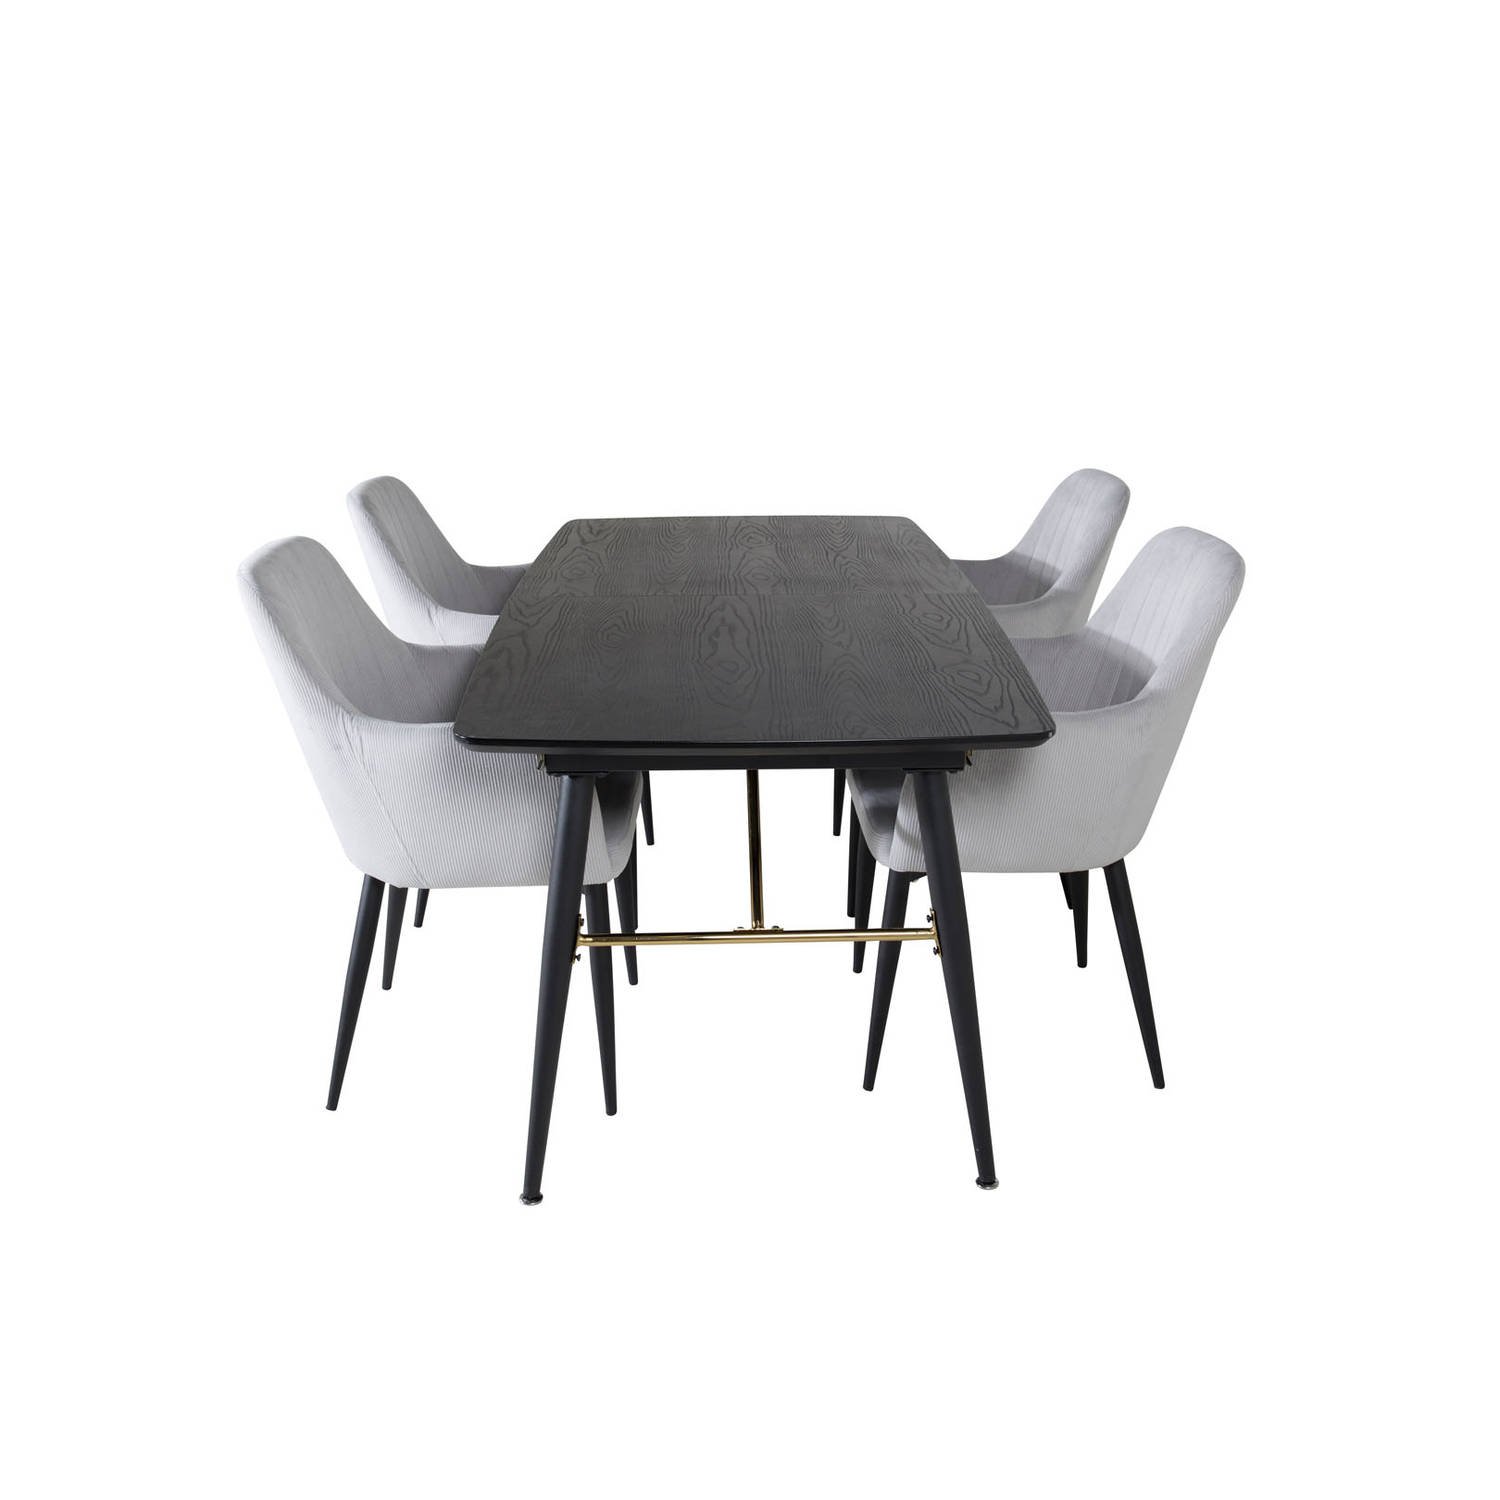 Gold eethoek eetkamertafel uitschuifbare tafel lengte cm 180 / 220 zwart en 4 Comfort eetkamerstal fluweel lichtgrijs, zwart.